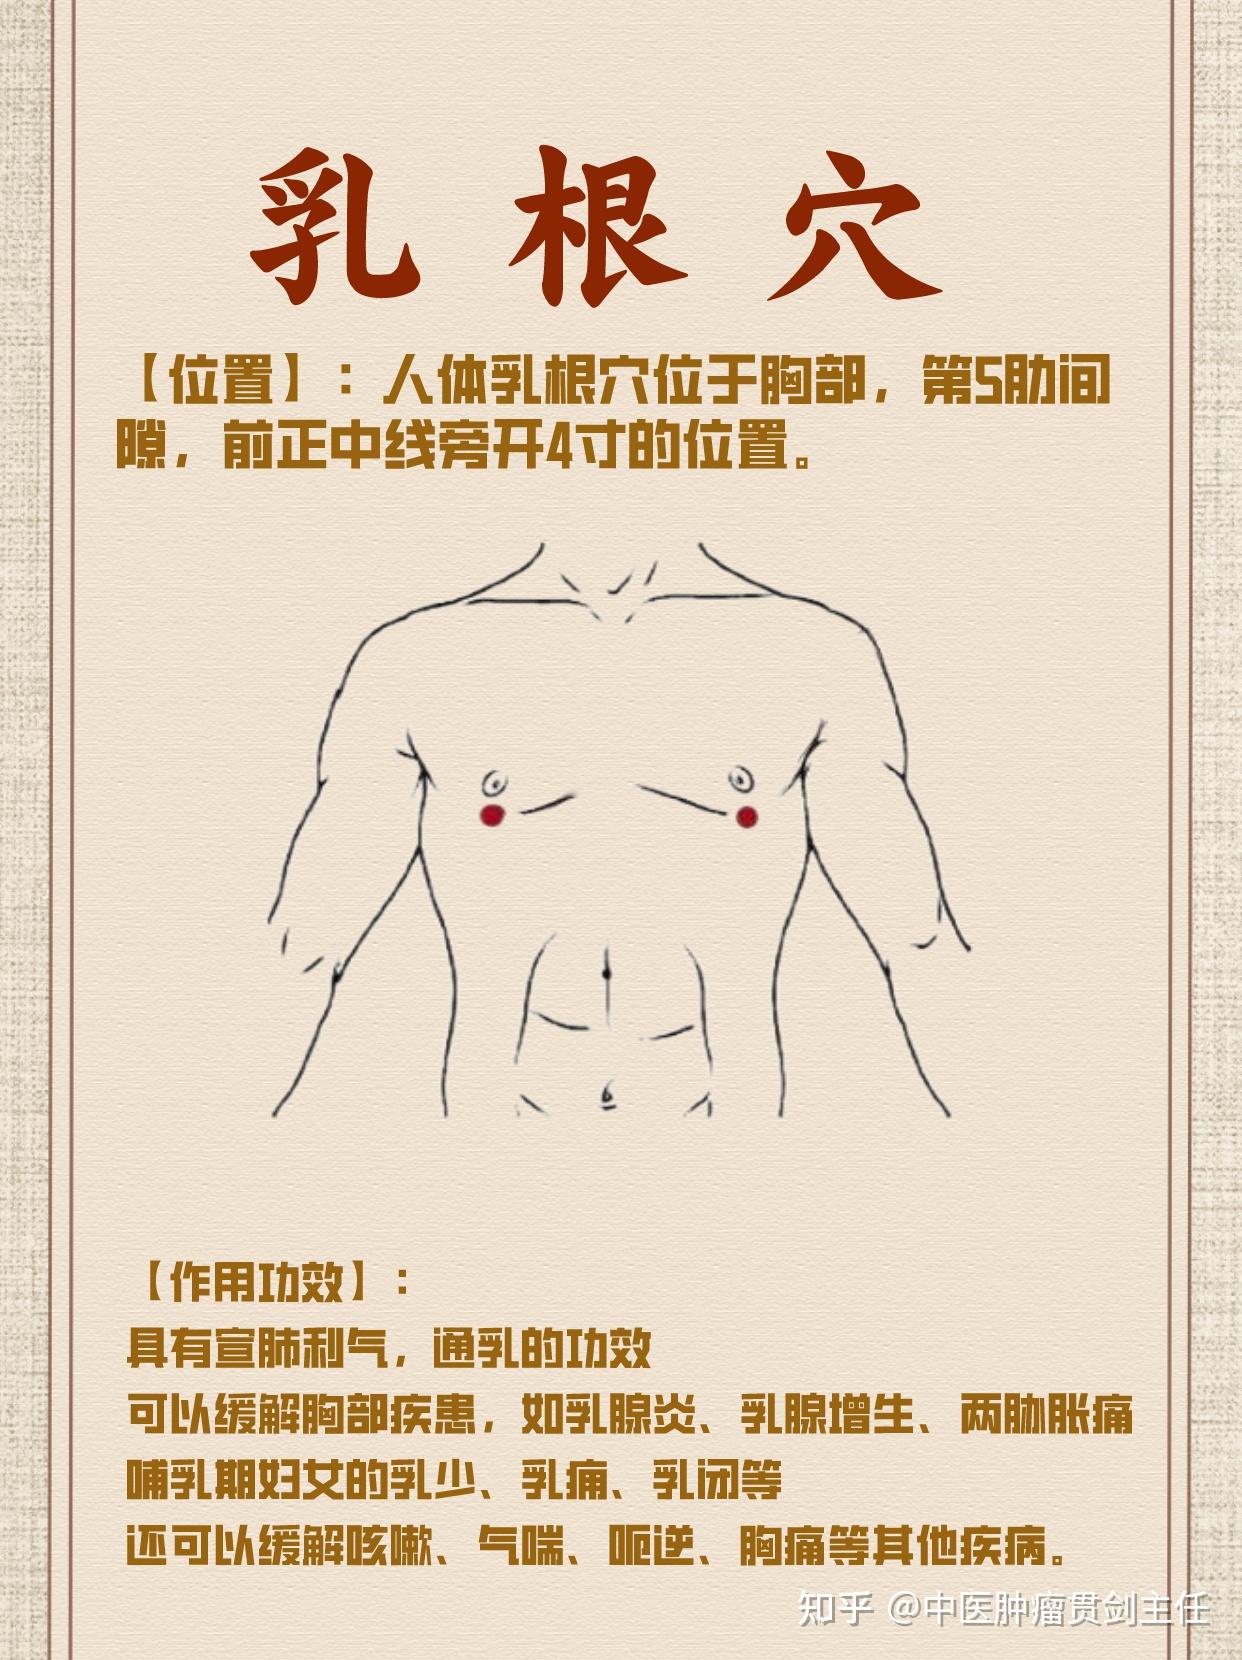 【位置】:人体乳根穴位于胸部,第5肋间隙,前正中线旁开4寸的位置